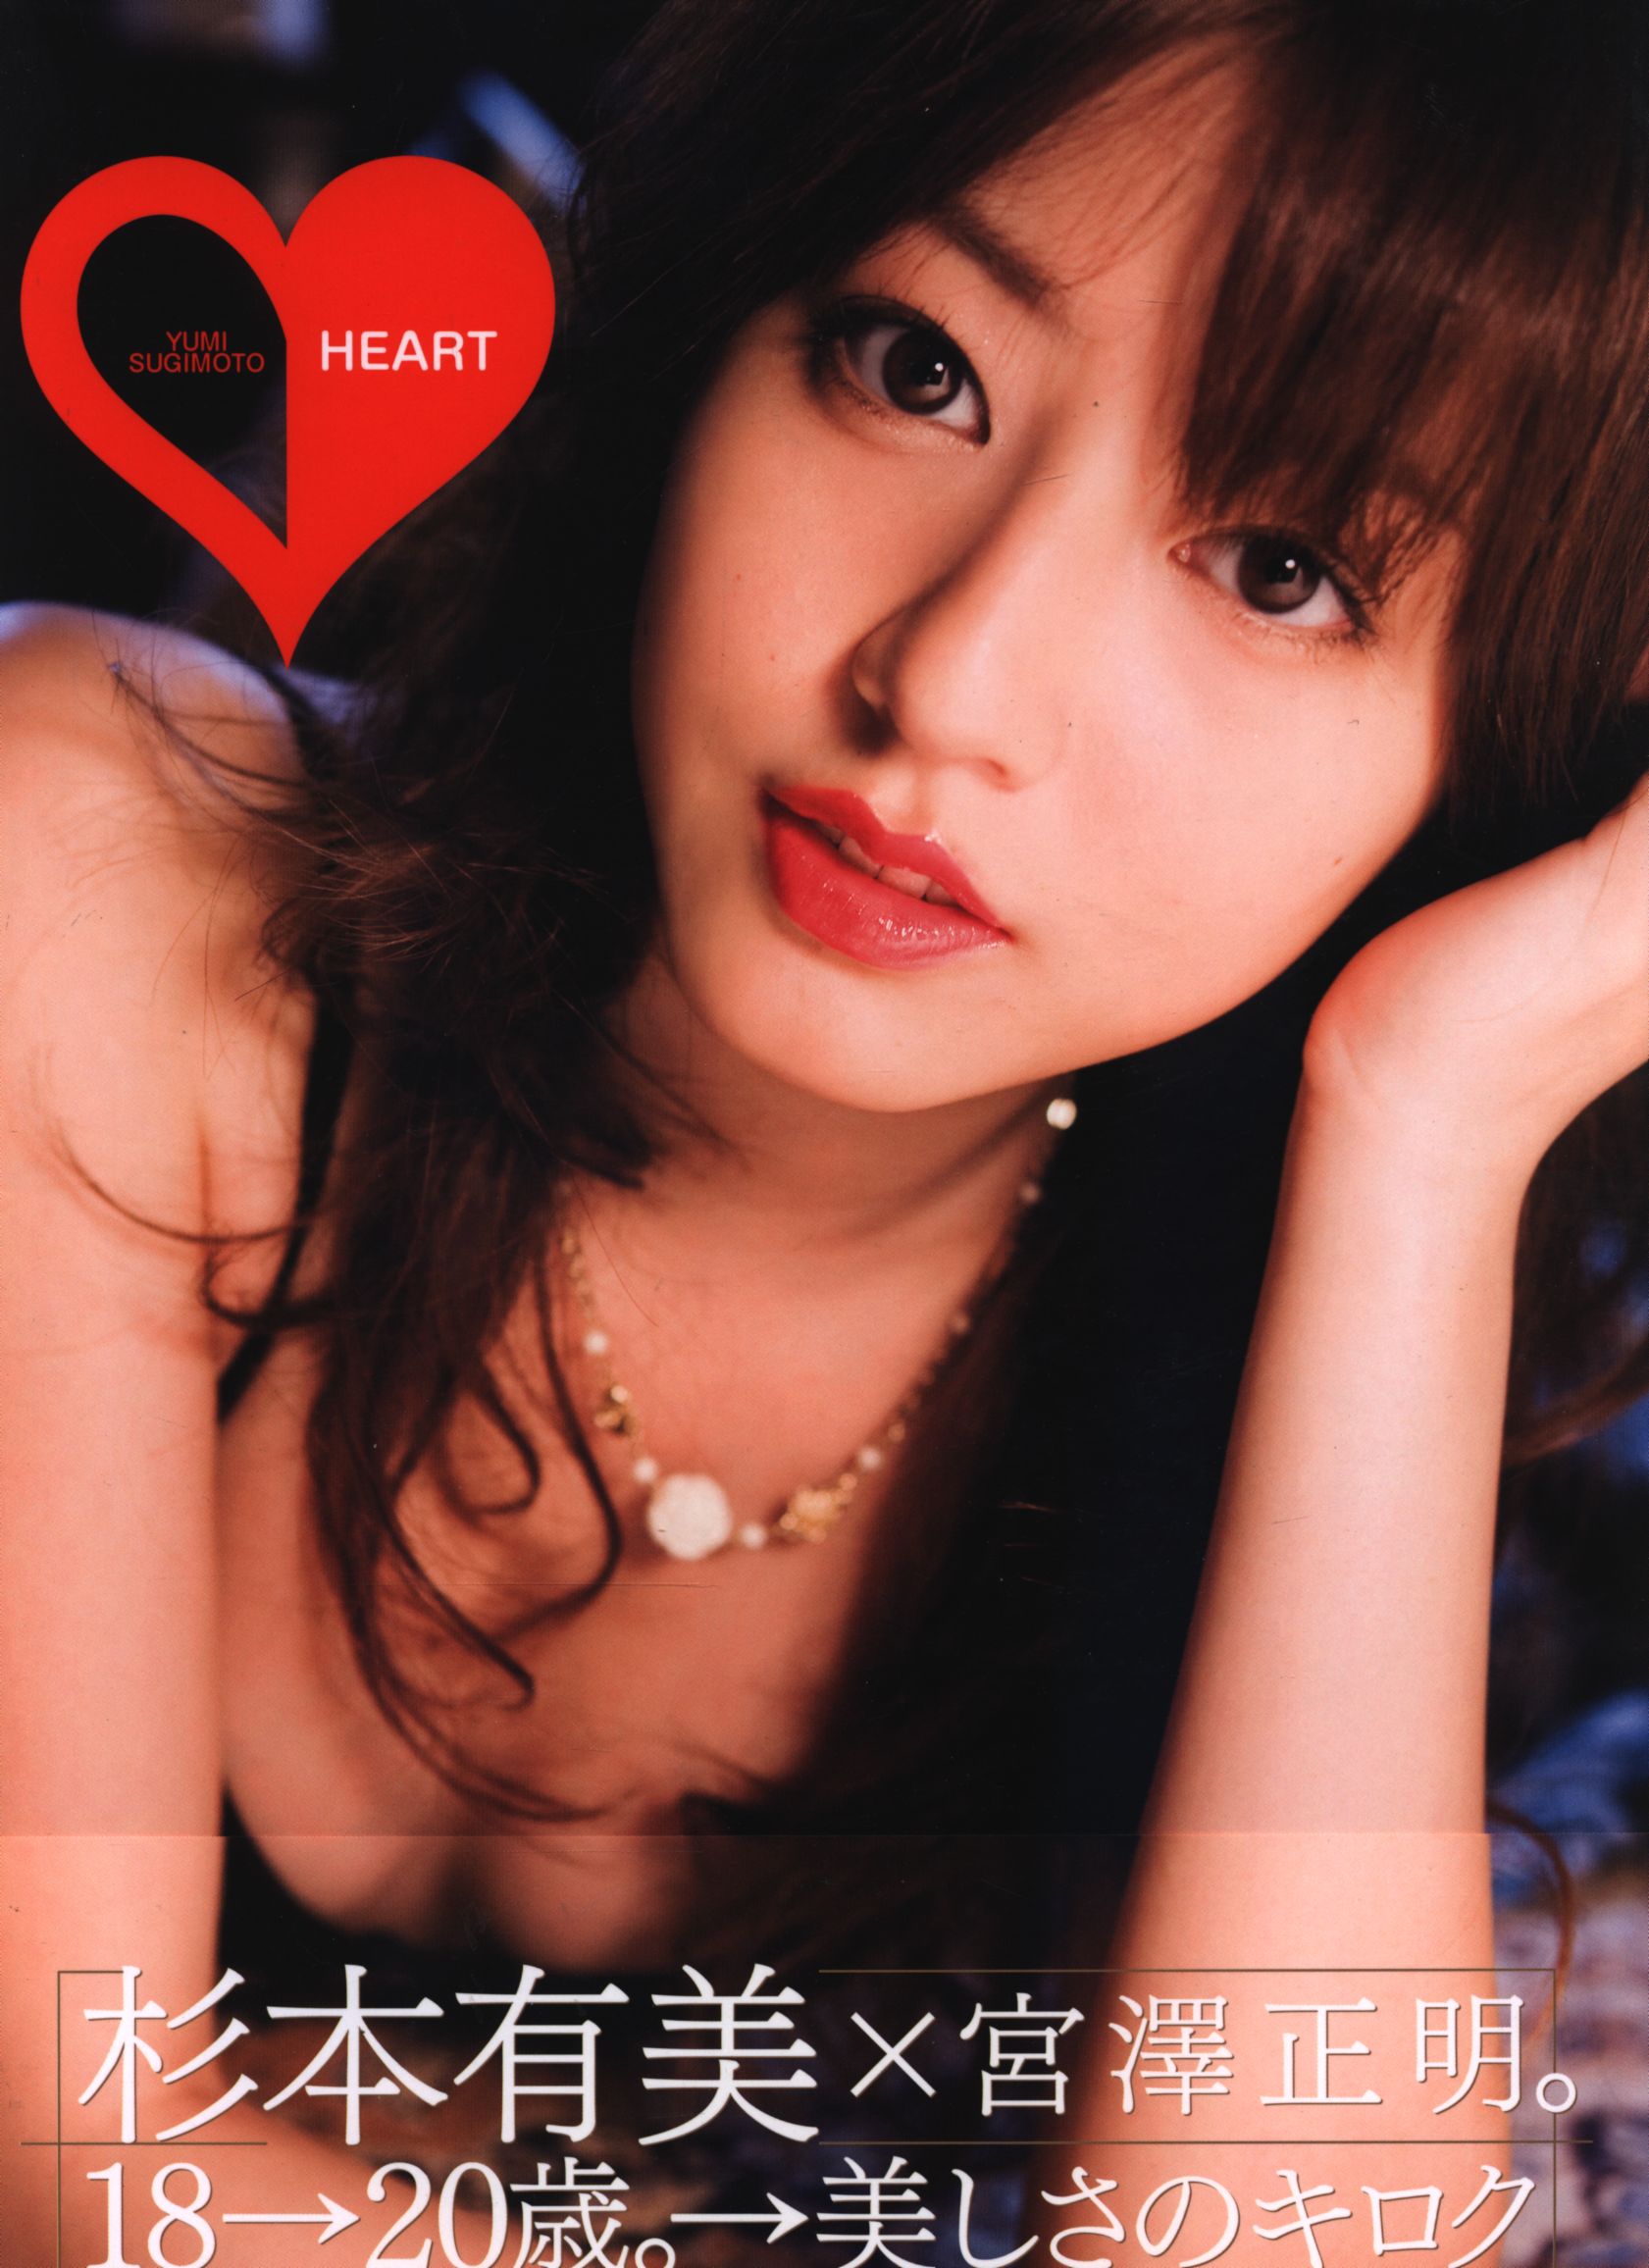 Yumi Sumigoto Porn - Kodansha Yumi Sugimoto HEART Yumi Sugimoto Photograph Collection |  Mandarake Online Shop